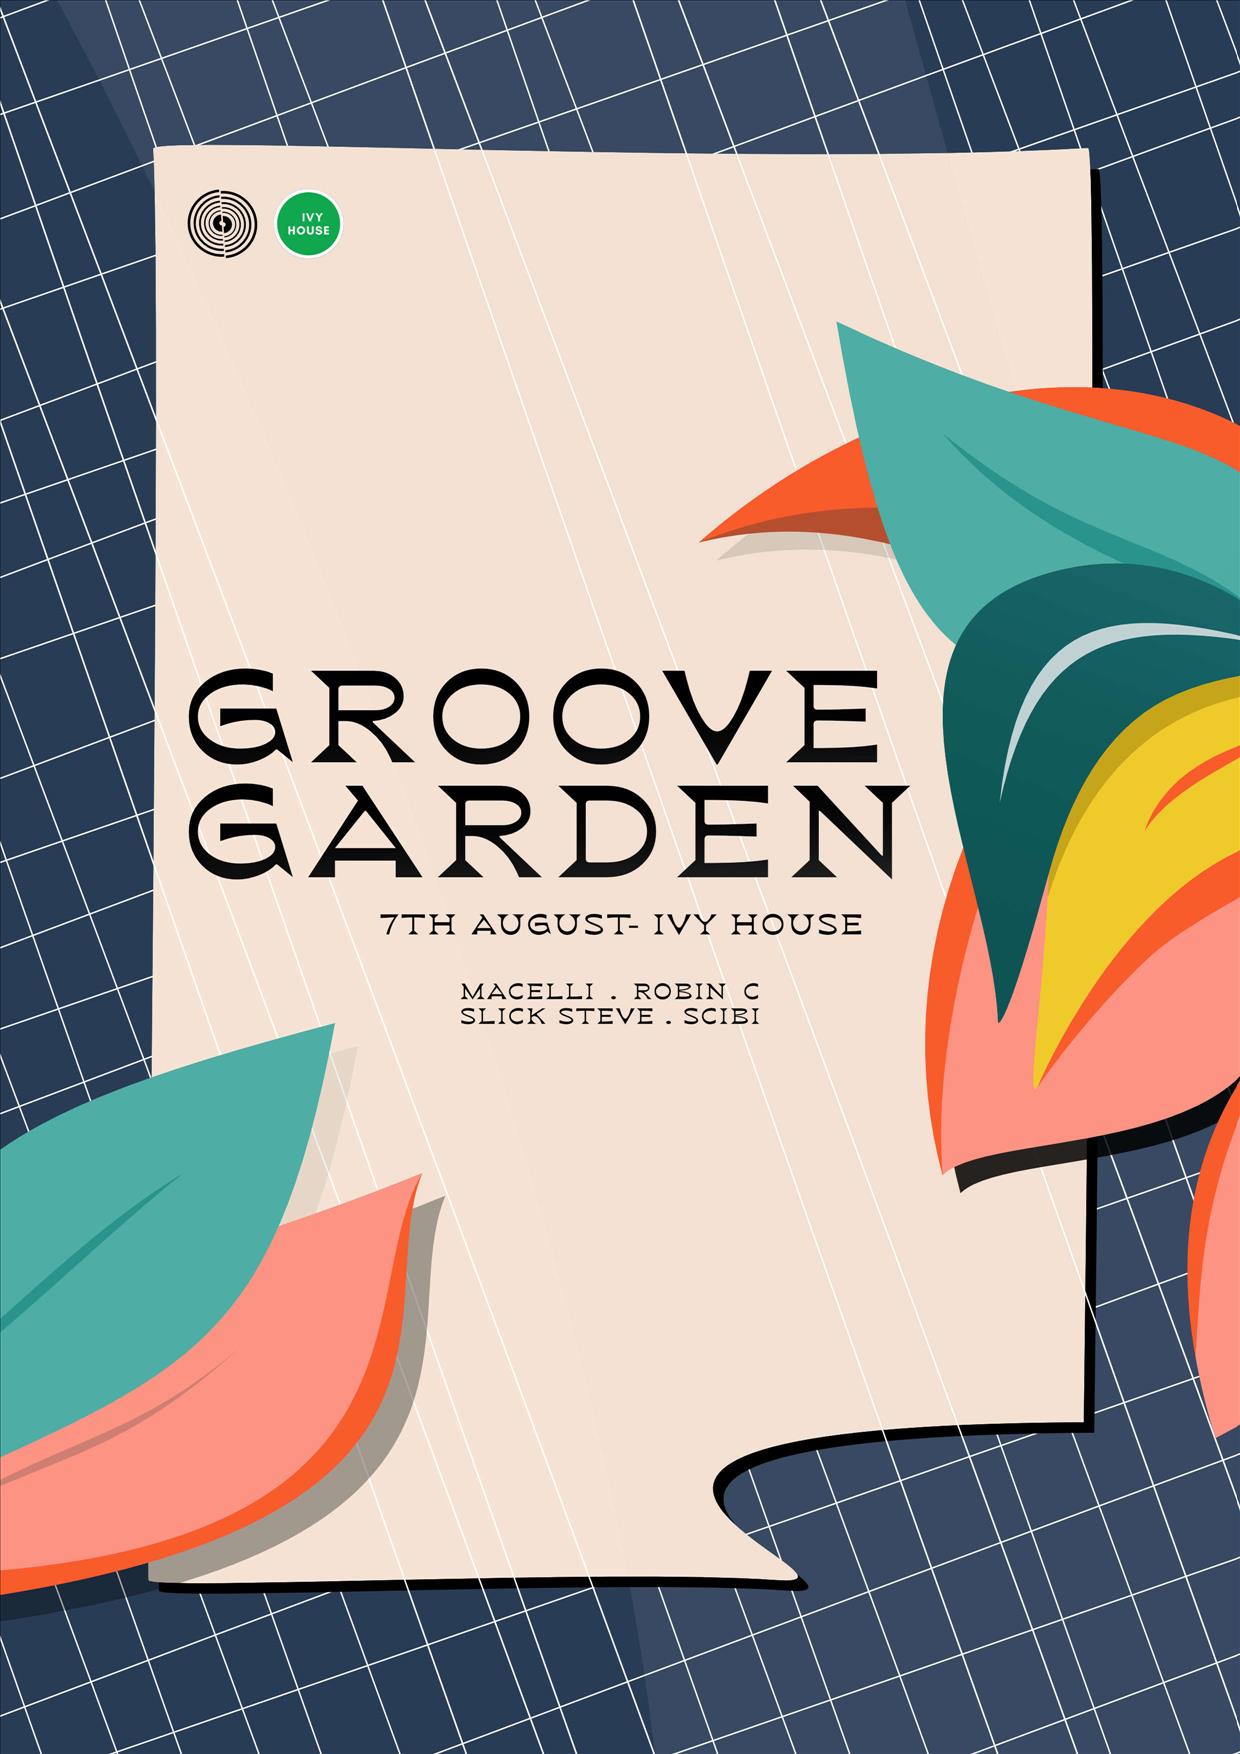 Groove Garden poster